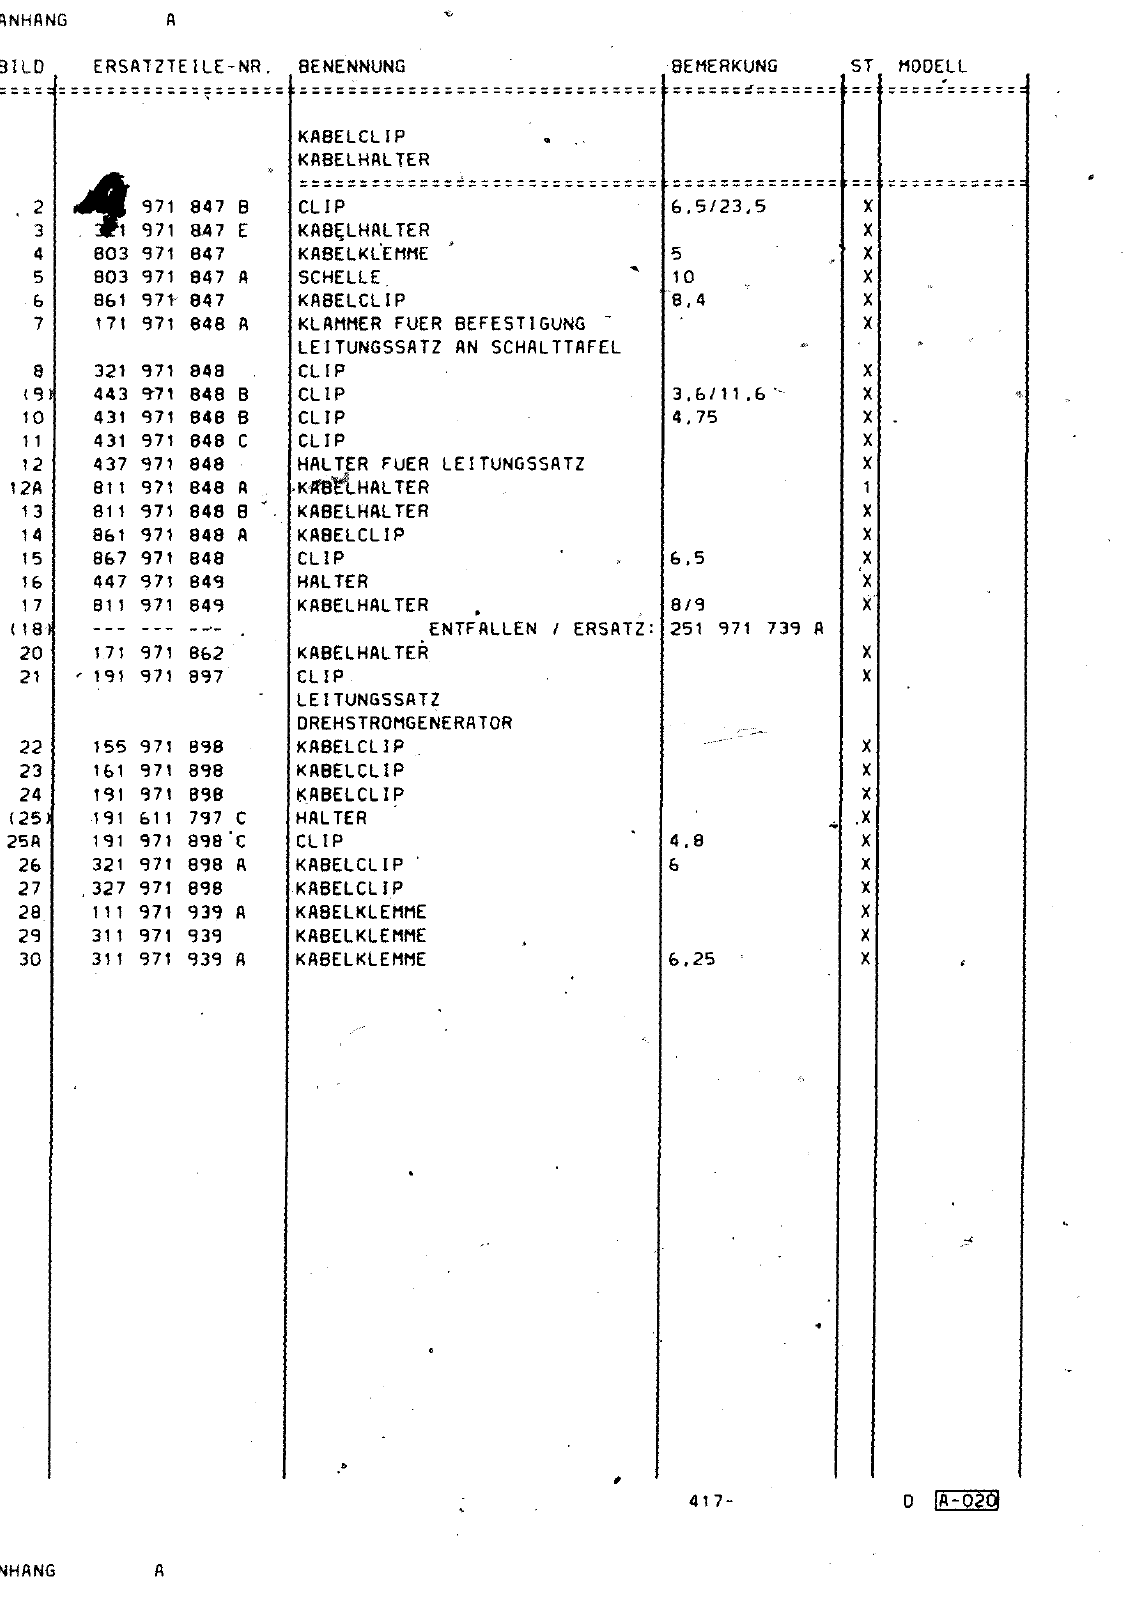 Vorschau Passat Mod 87-88 Seite 1068